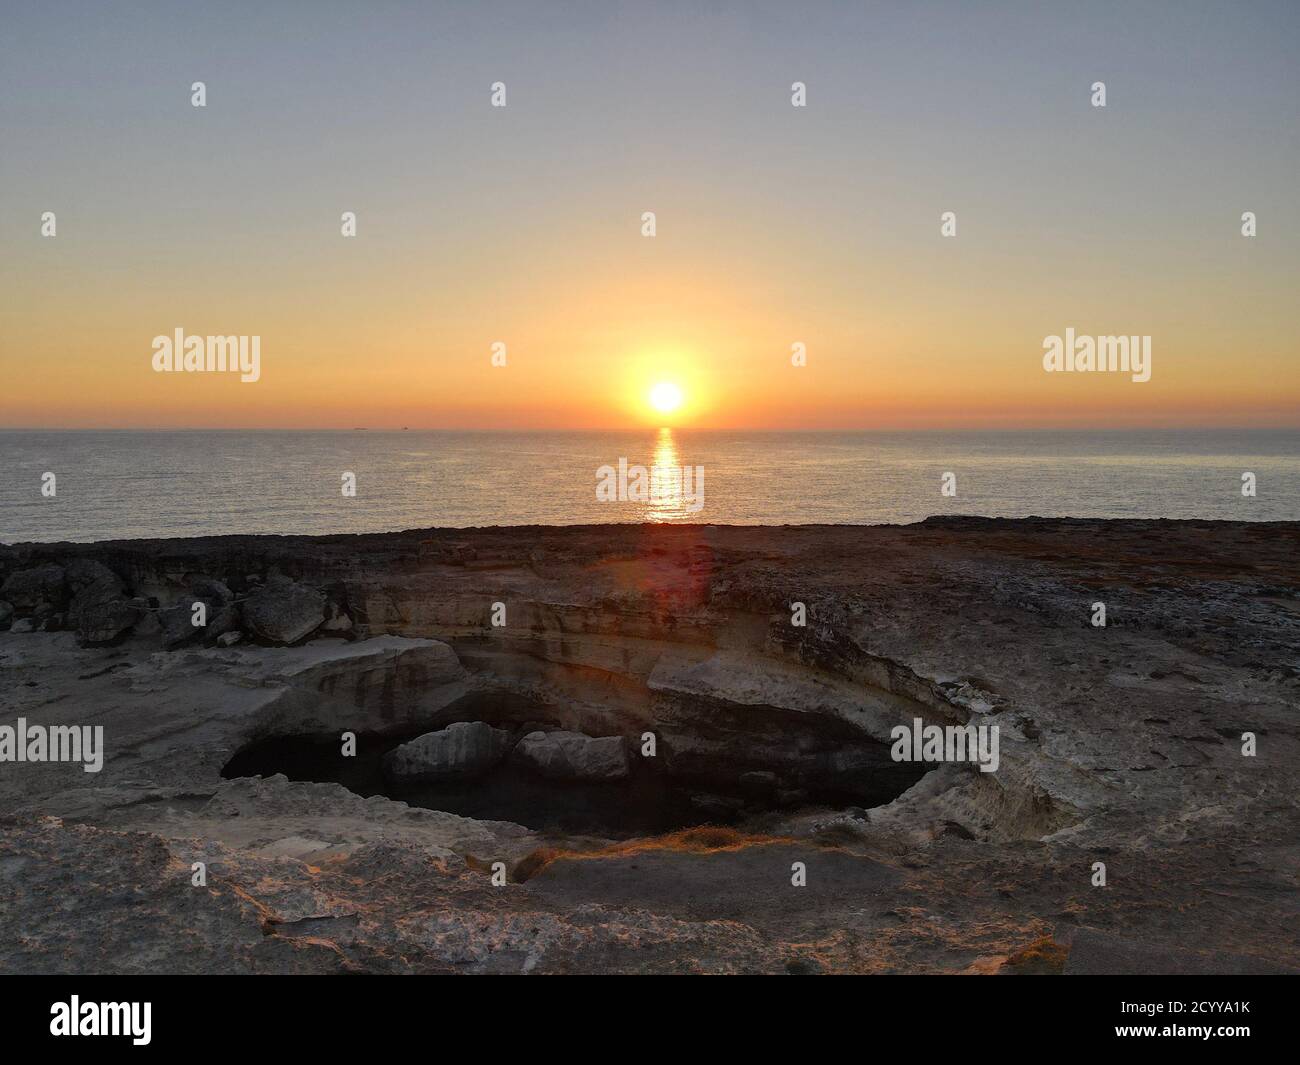 Veduta aerea - Grotta della Poesia, Puglia. Uno dei luoghi più famosi della Puglia durante l'alba, a sud d'Italia Foto Stock